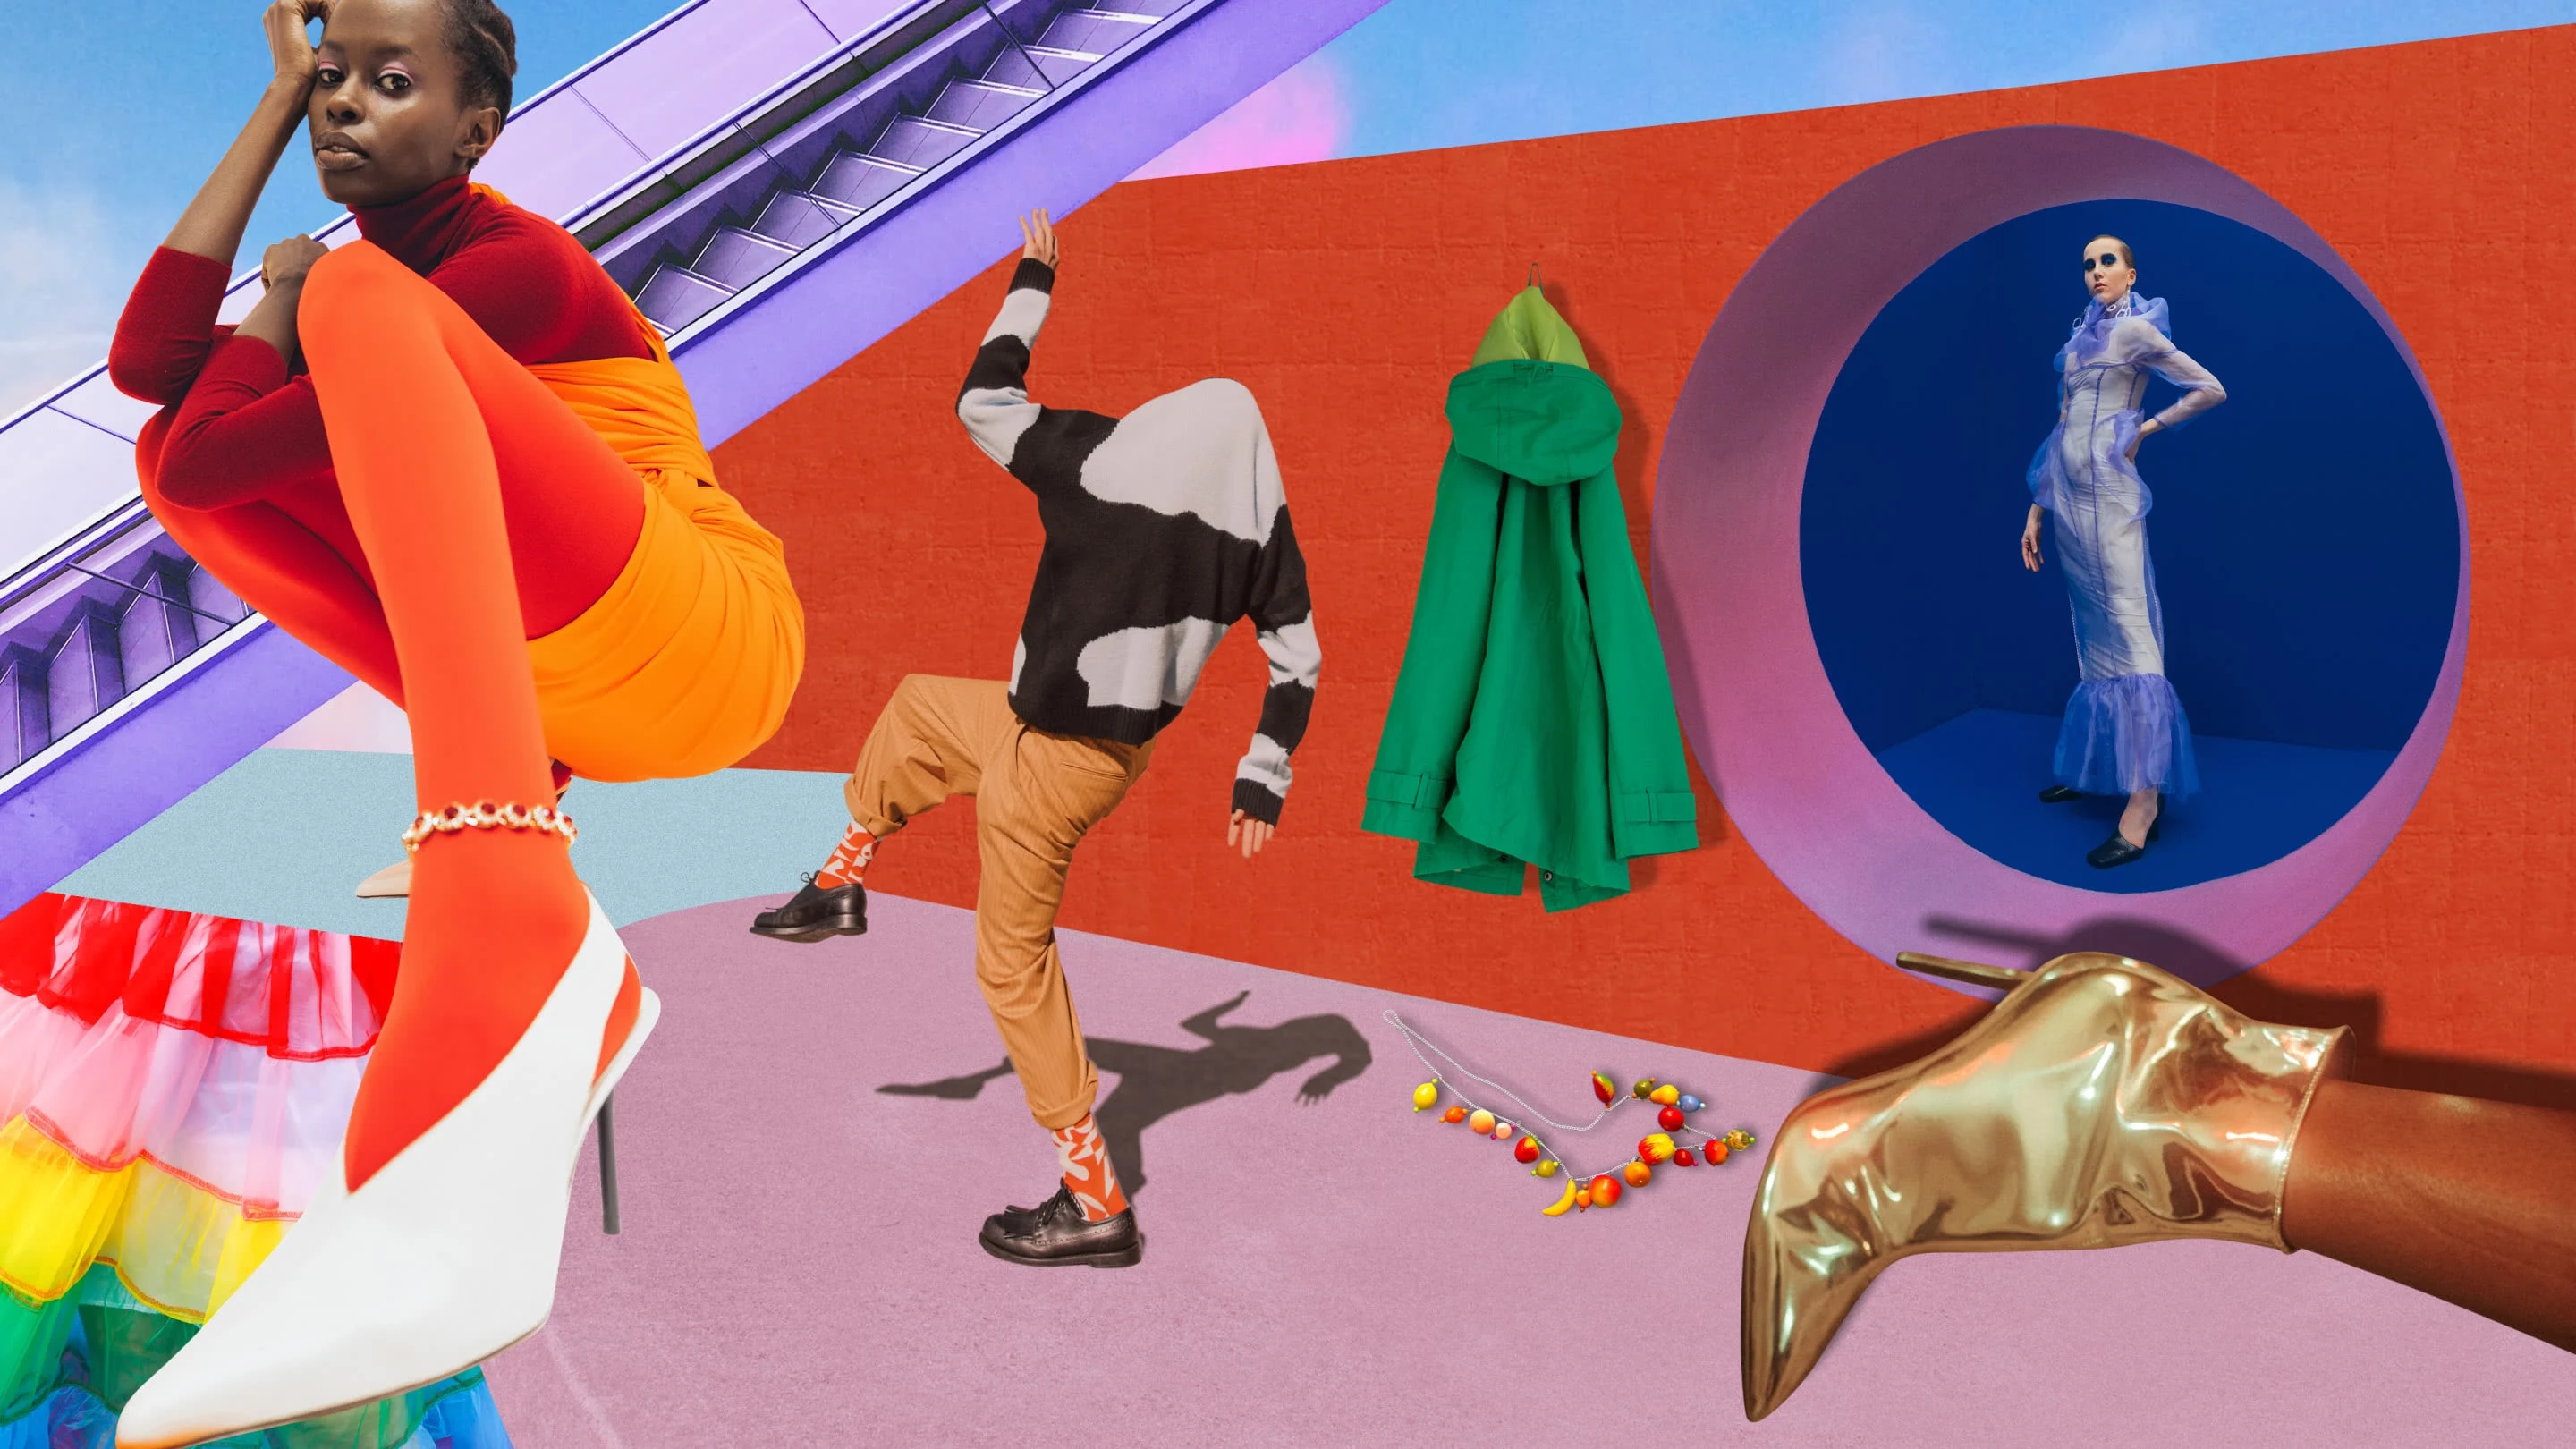 Collage avec des personnes en vêtements colorés. À gauche, femme noire en tenue orange vif. Au centre, homme portant un pull à motif cachant sa tête, un pantalon et des chaussettes orange. À droite, femme blanche habillée d'une robe en mousseline de soie bleue.